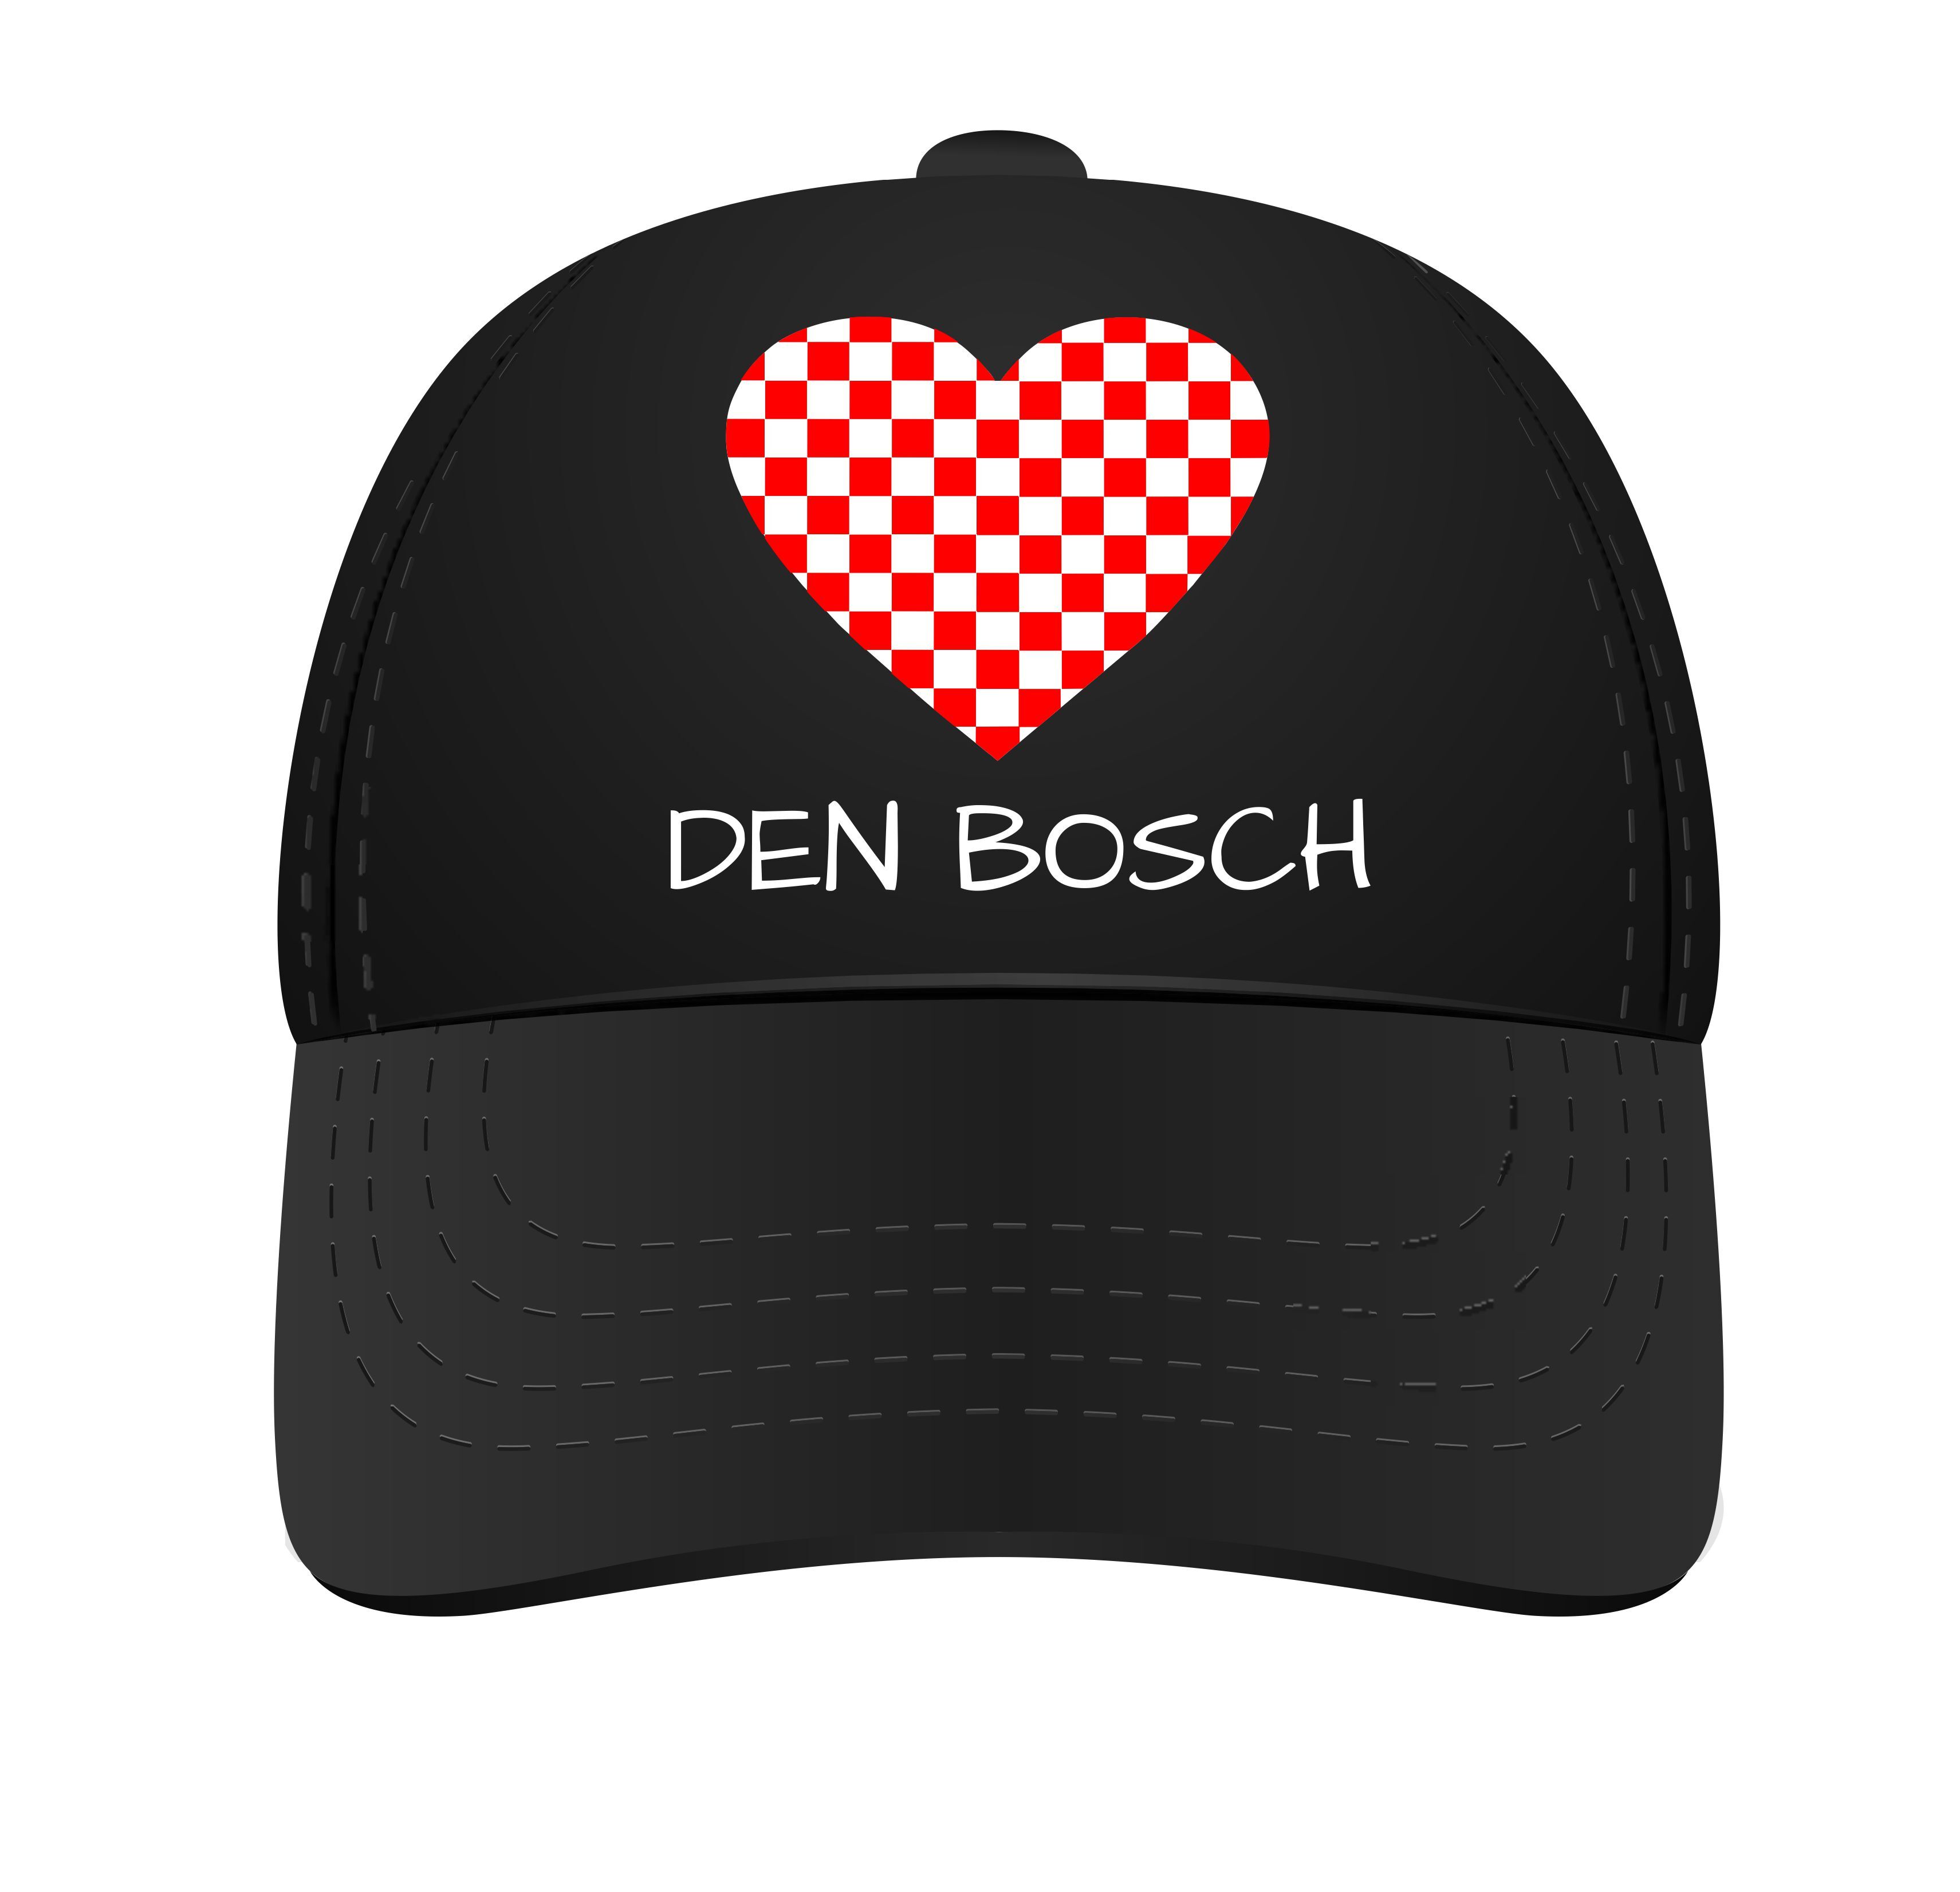 Pet Brabant houden van Den Bosch